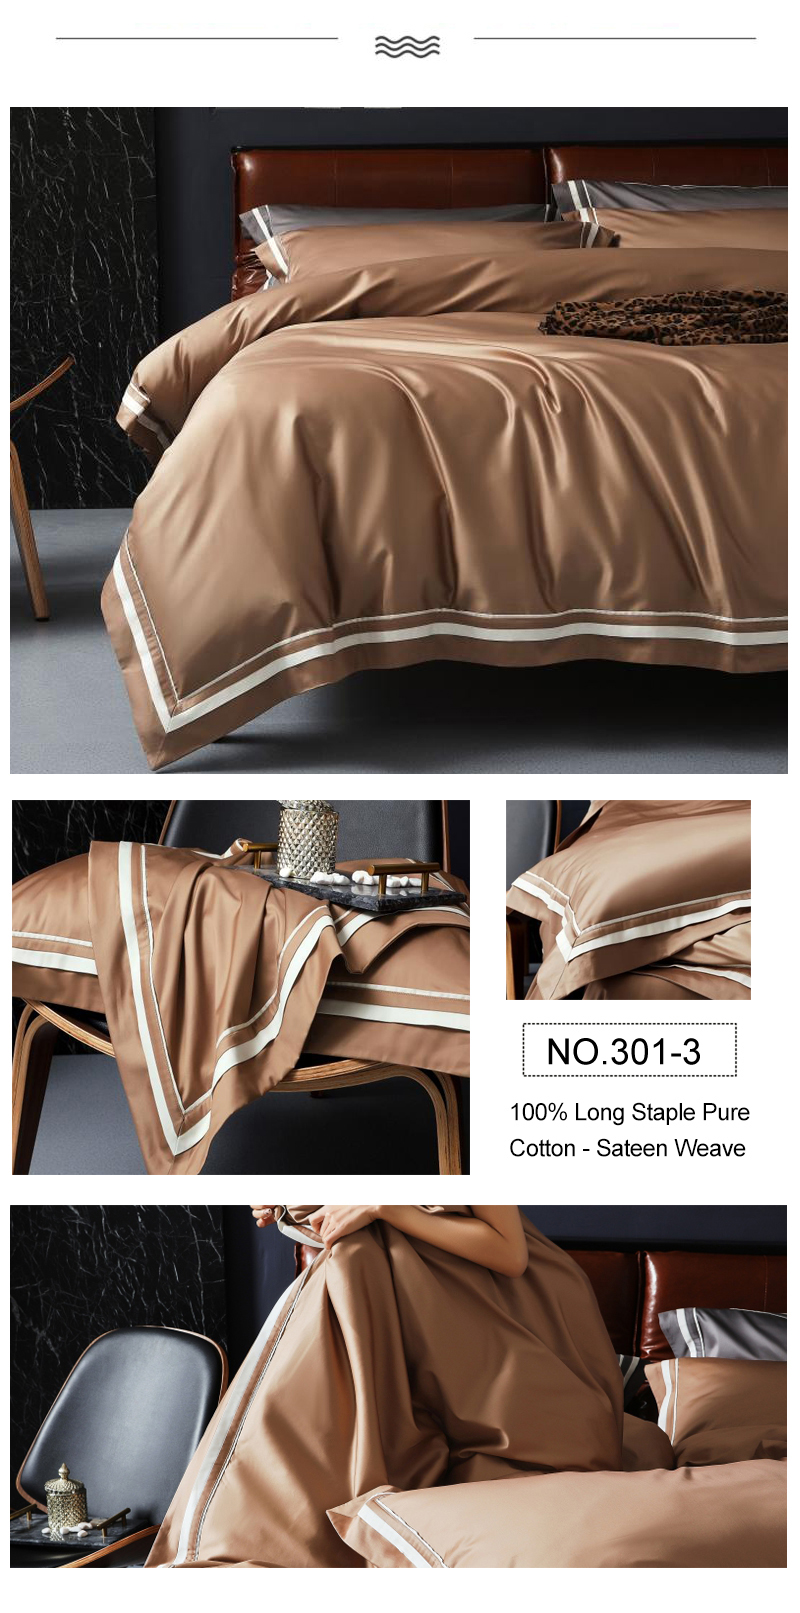 Highest Quality Match color Comforter Set